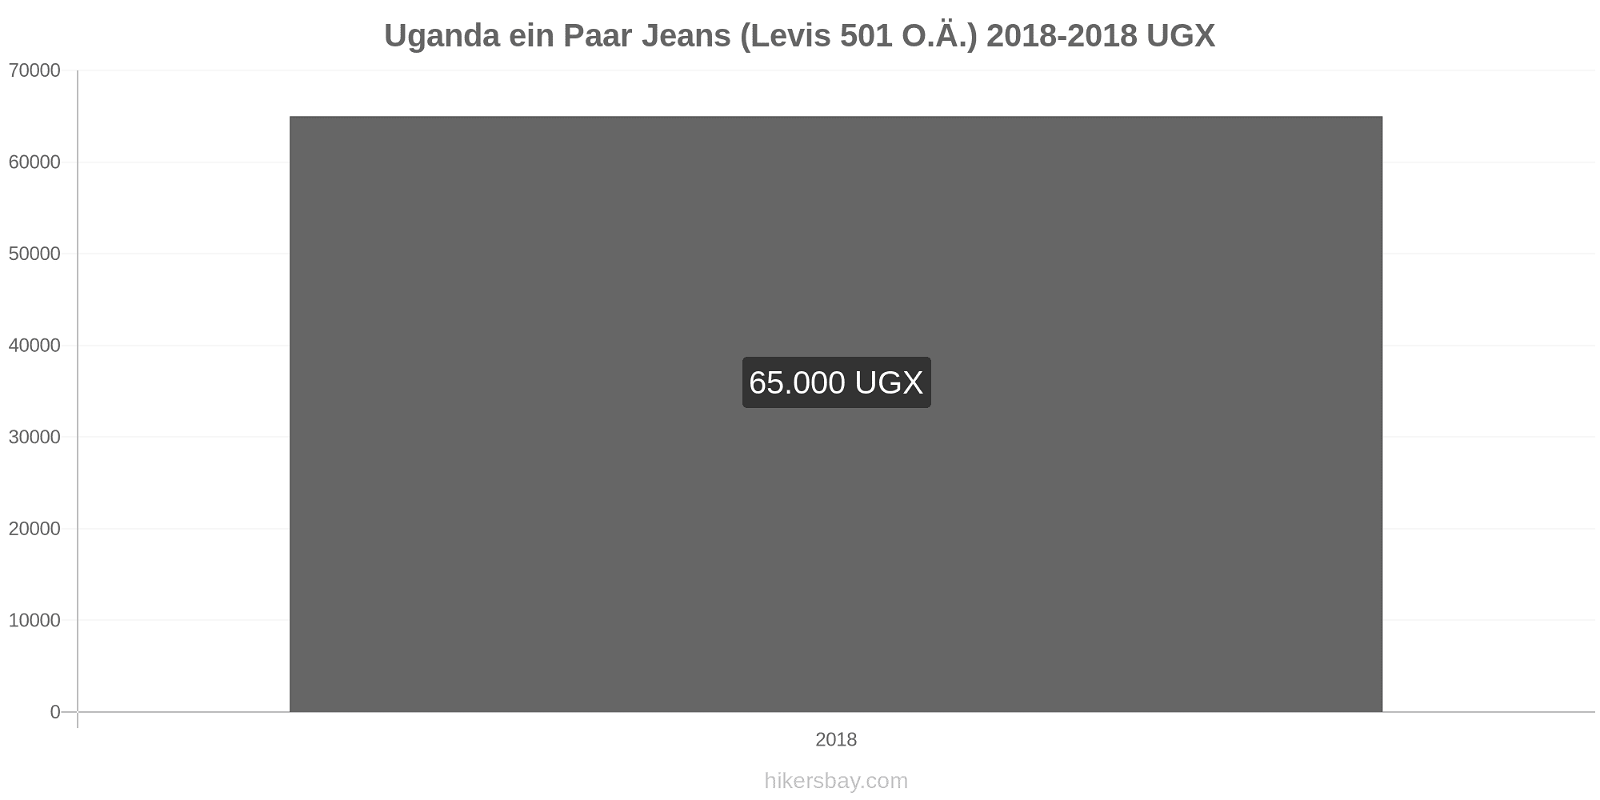 Uganda Preisänderungen 1 Paar Jeans (Levis 501 oder ähnlich) hikersbay.com